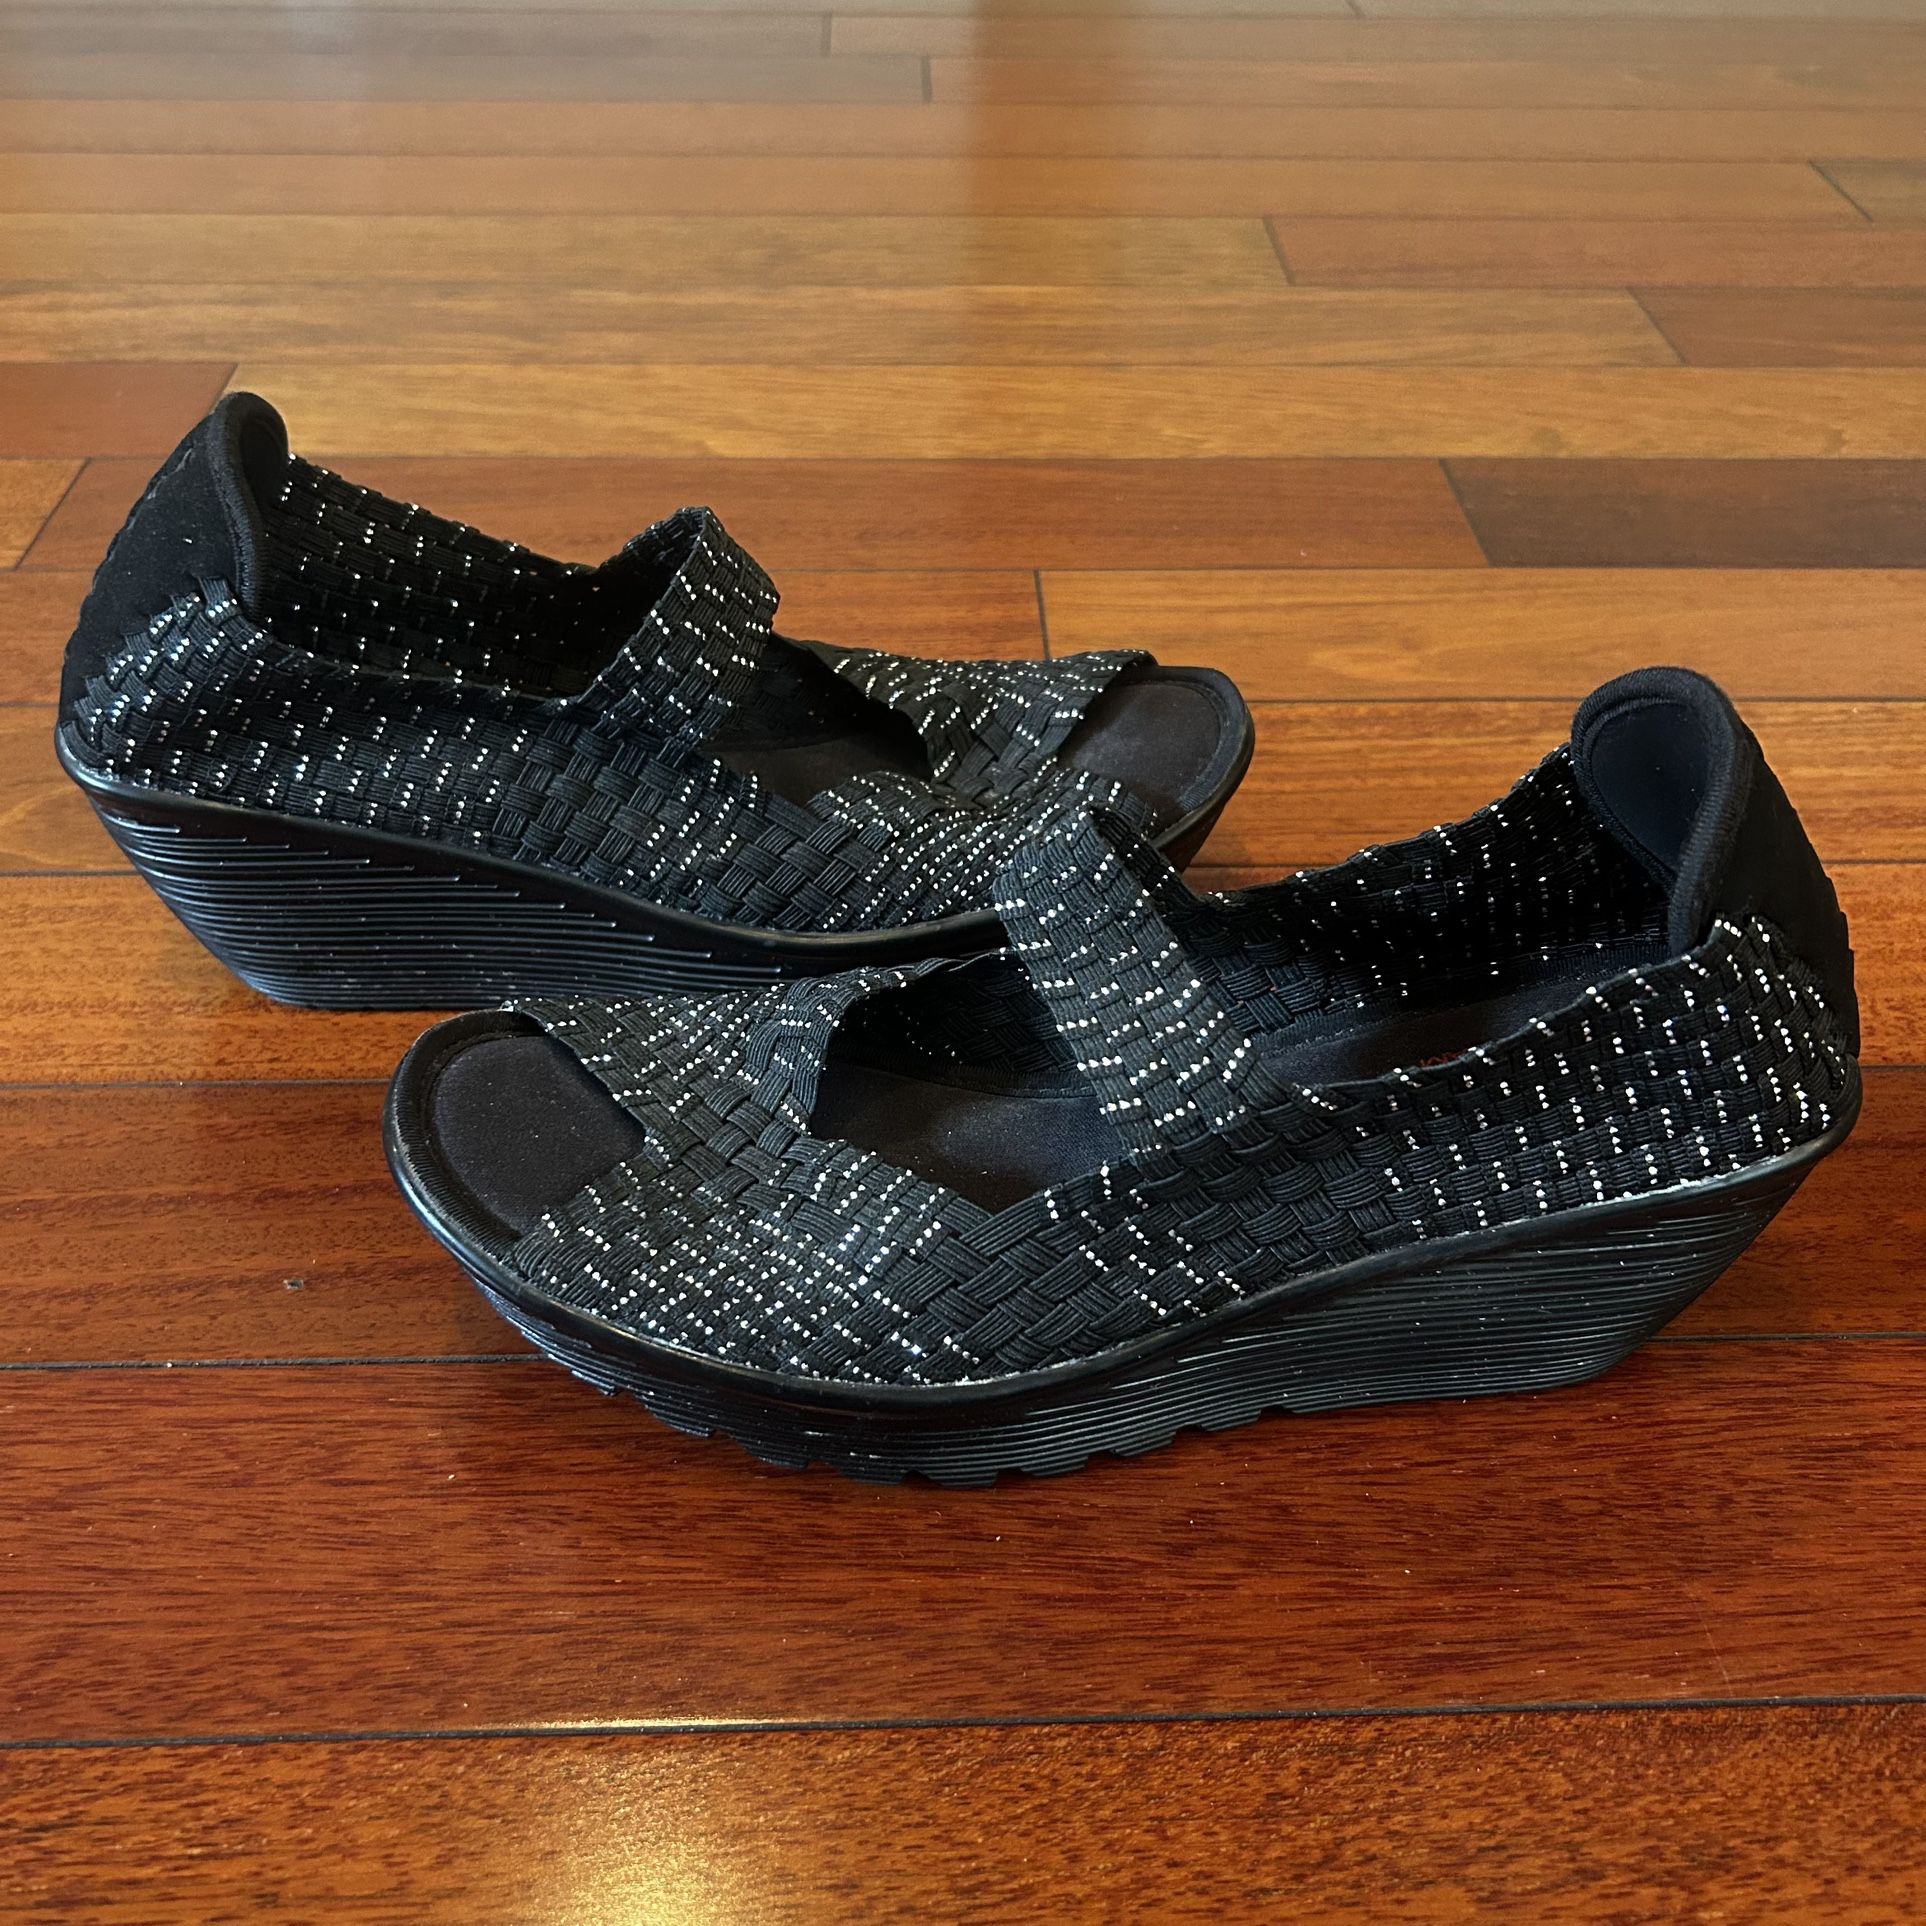 Skechers Memory Foam Women’s Wedge Sandals Black Sparkle Size 9